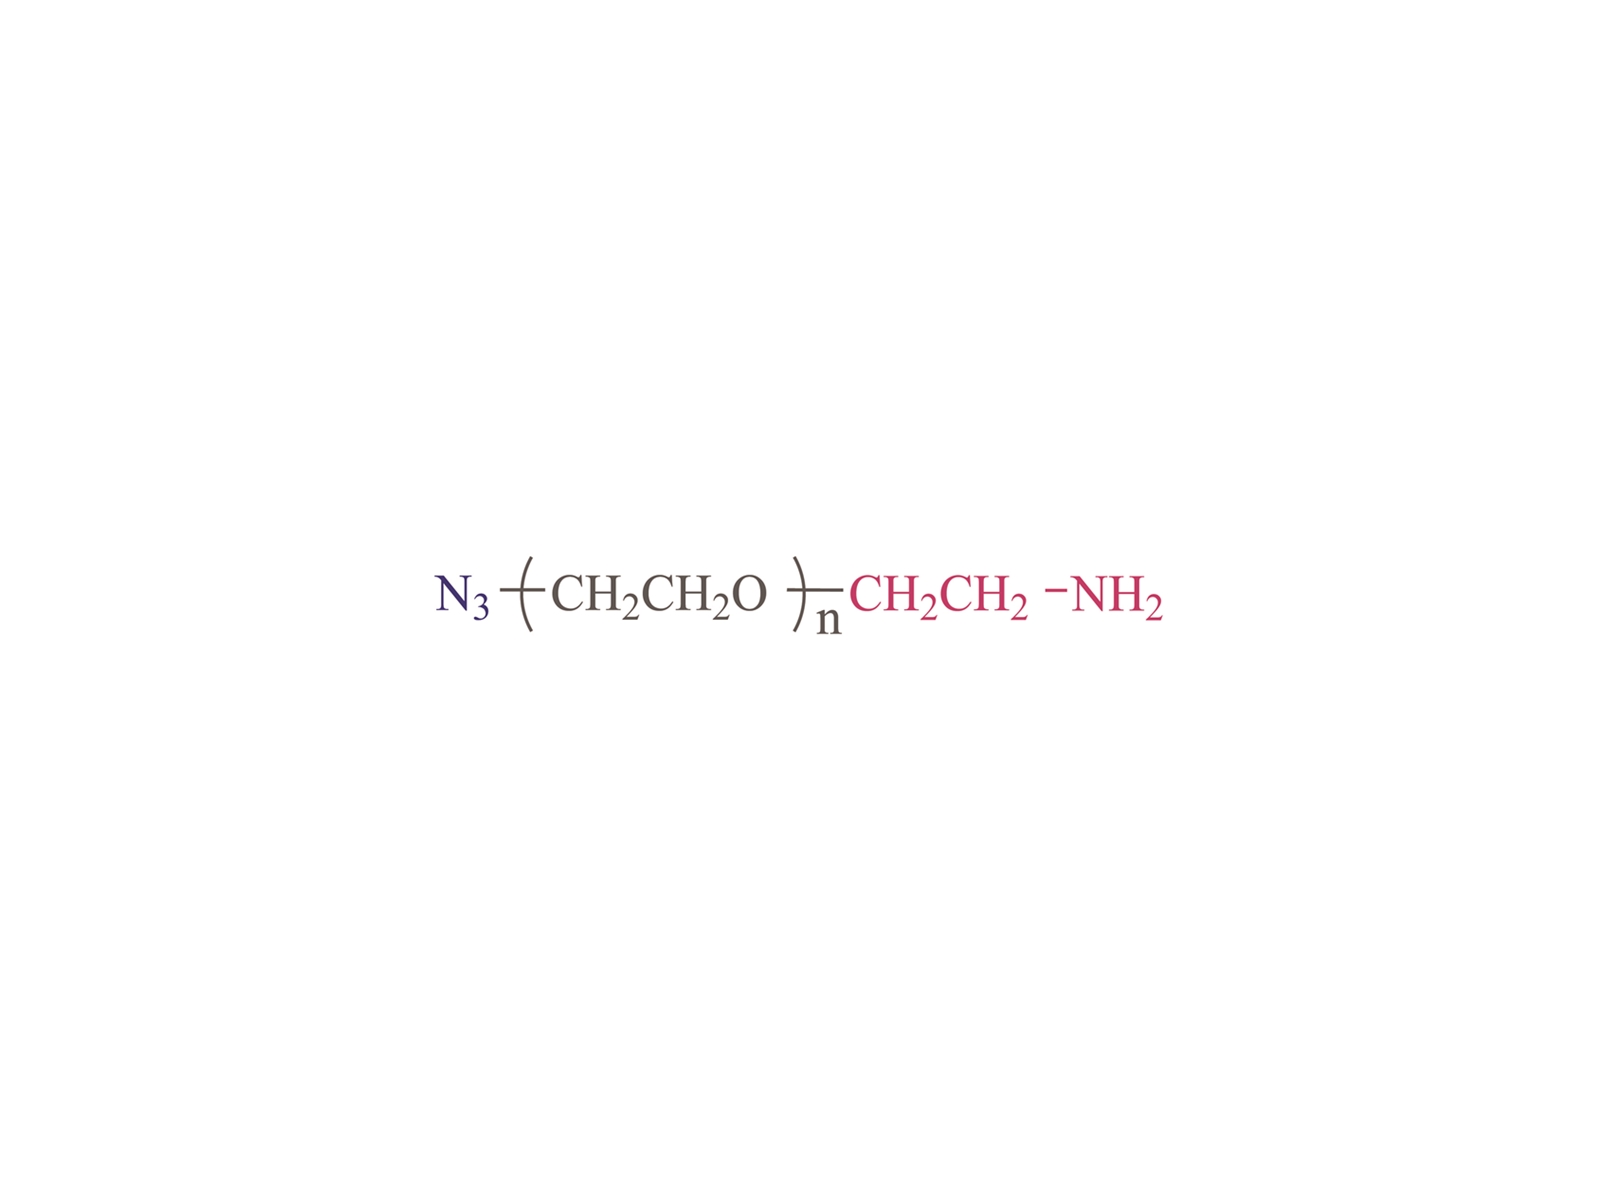 α-azido-Ω-amino poly (ethyleenglycol) [N3-PEG-NH2] CAS: 464190-91-8166388-57-4,134179-38-7.951671-92-4,516493-93-9, 957486-82-71333154-77-0.857891-82-8912849-73-1.1800414-71-4